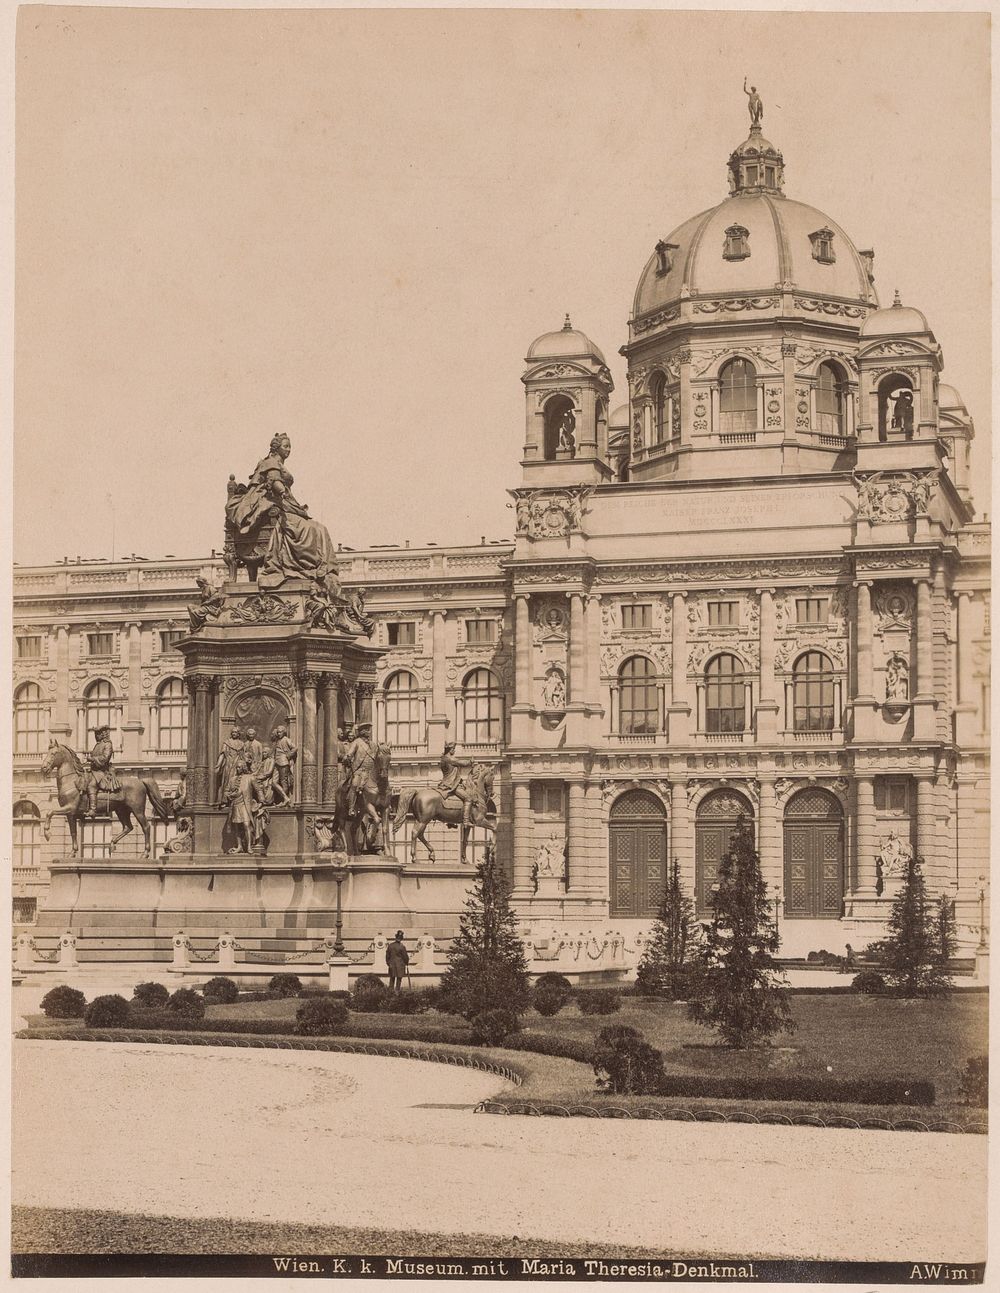 K.k. Naturhistorisches Hofmuseum in Wenen met het standbeeld van Maria Theresia van Oostenrijk (c. 1870 - c. 1900) by A…